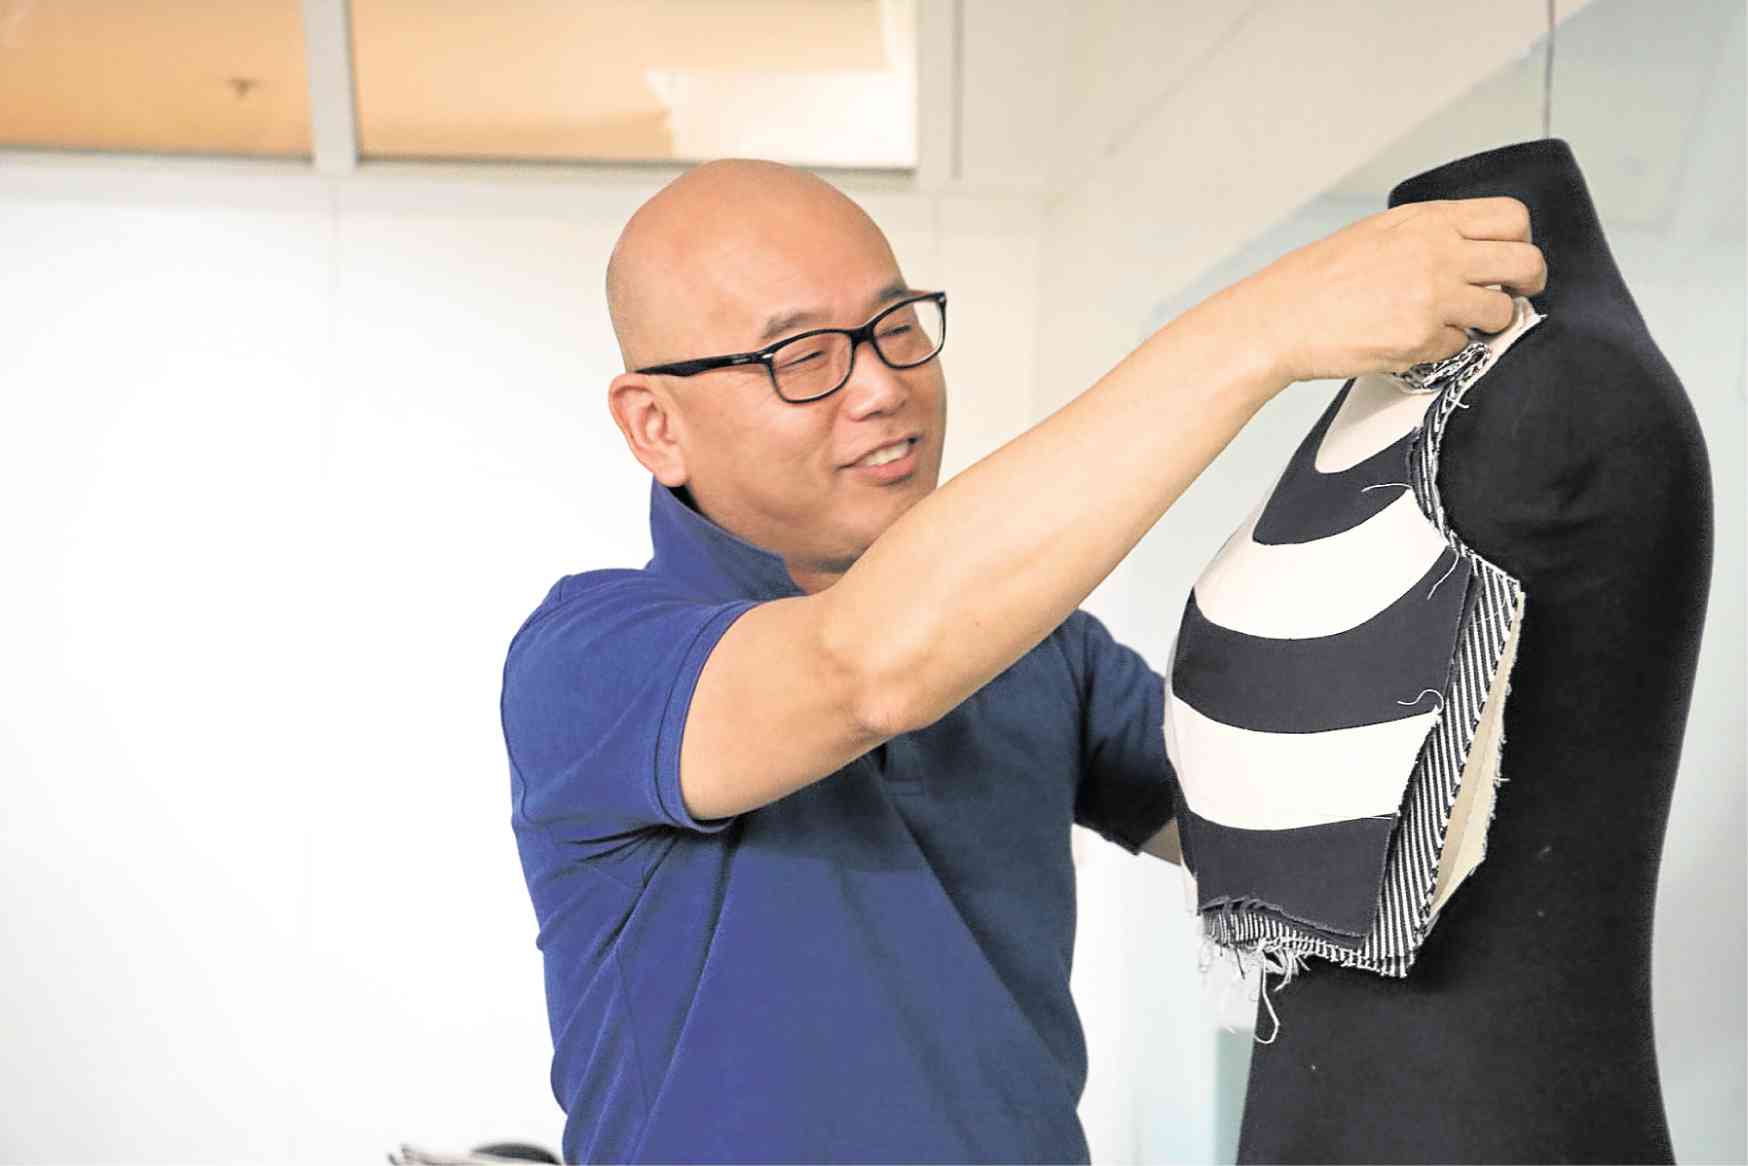 Japanese designer and instructor Shingo Sato